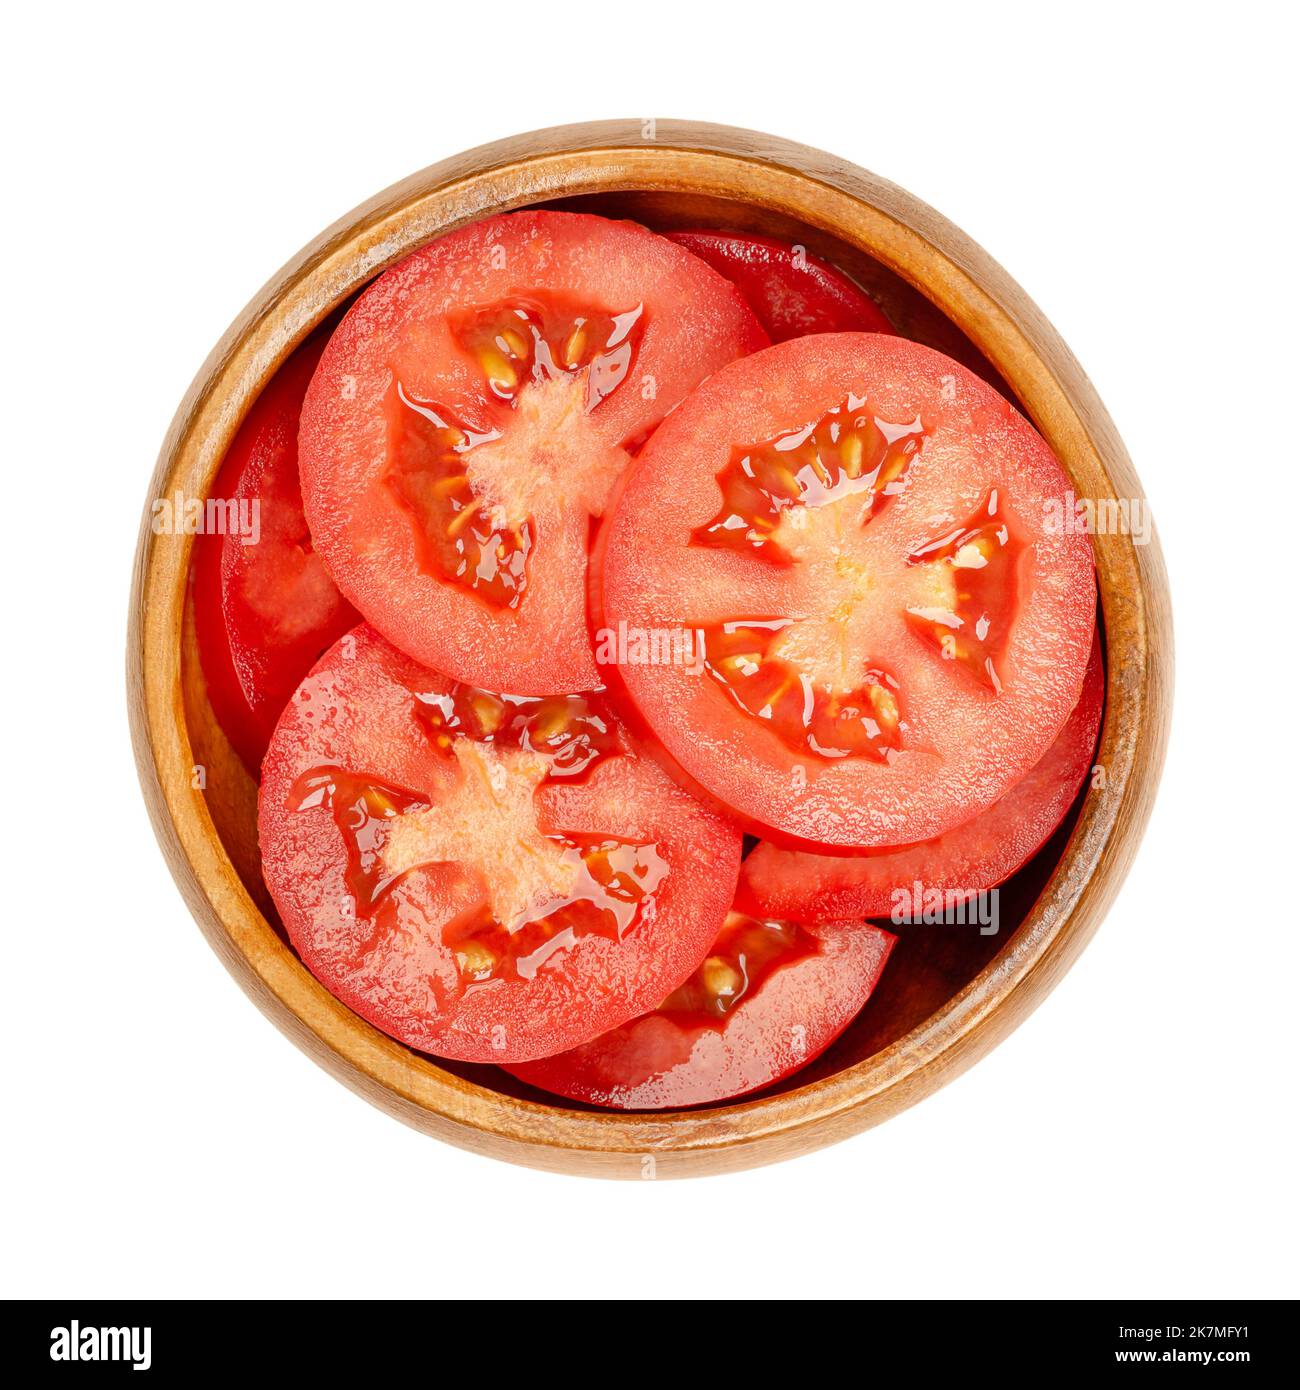 Tranches de tomates prunes fraîches, dans un bol en bois, isolées du dessus. Tranches de tomates ovales mûres rouges, superposées l'une sur l'autre. Banque D'Images